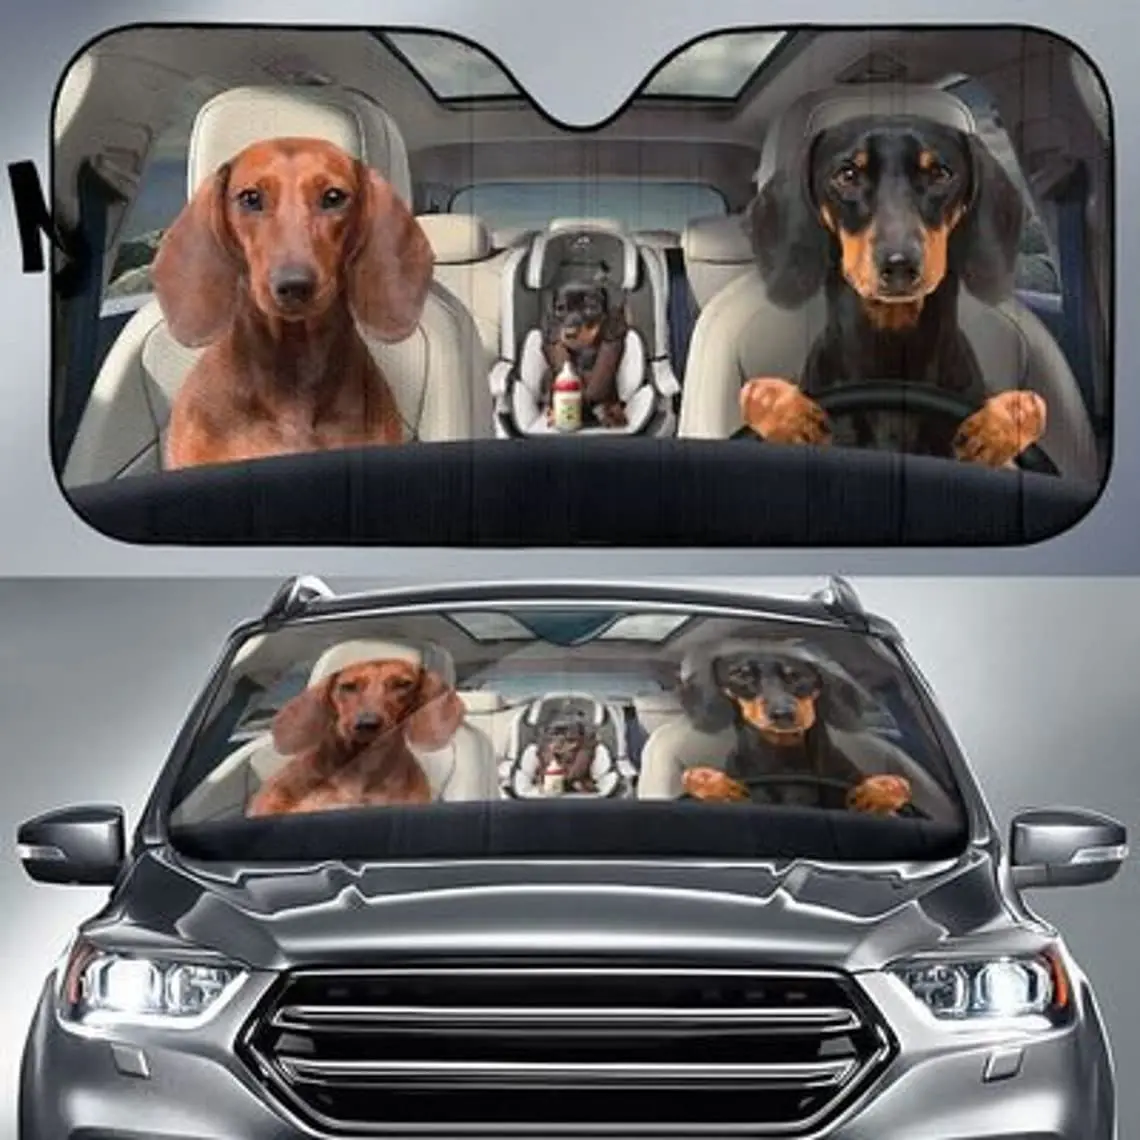 

3D Dachshunds автомобильный солнцезащитный козырек на лобовое стекло для всей семьи, любителей таксы, подарки для собак и мамы, подарки для любите...